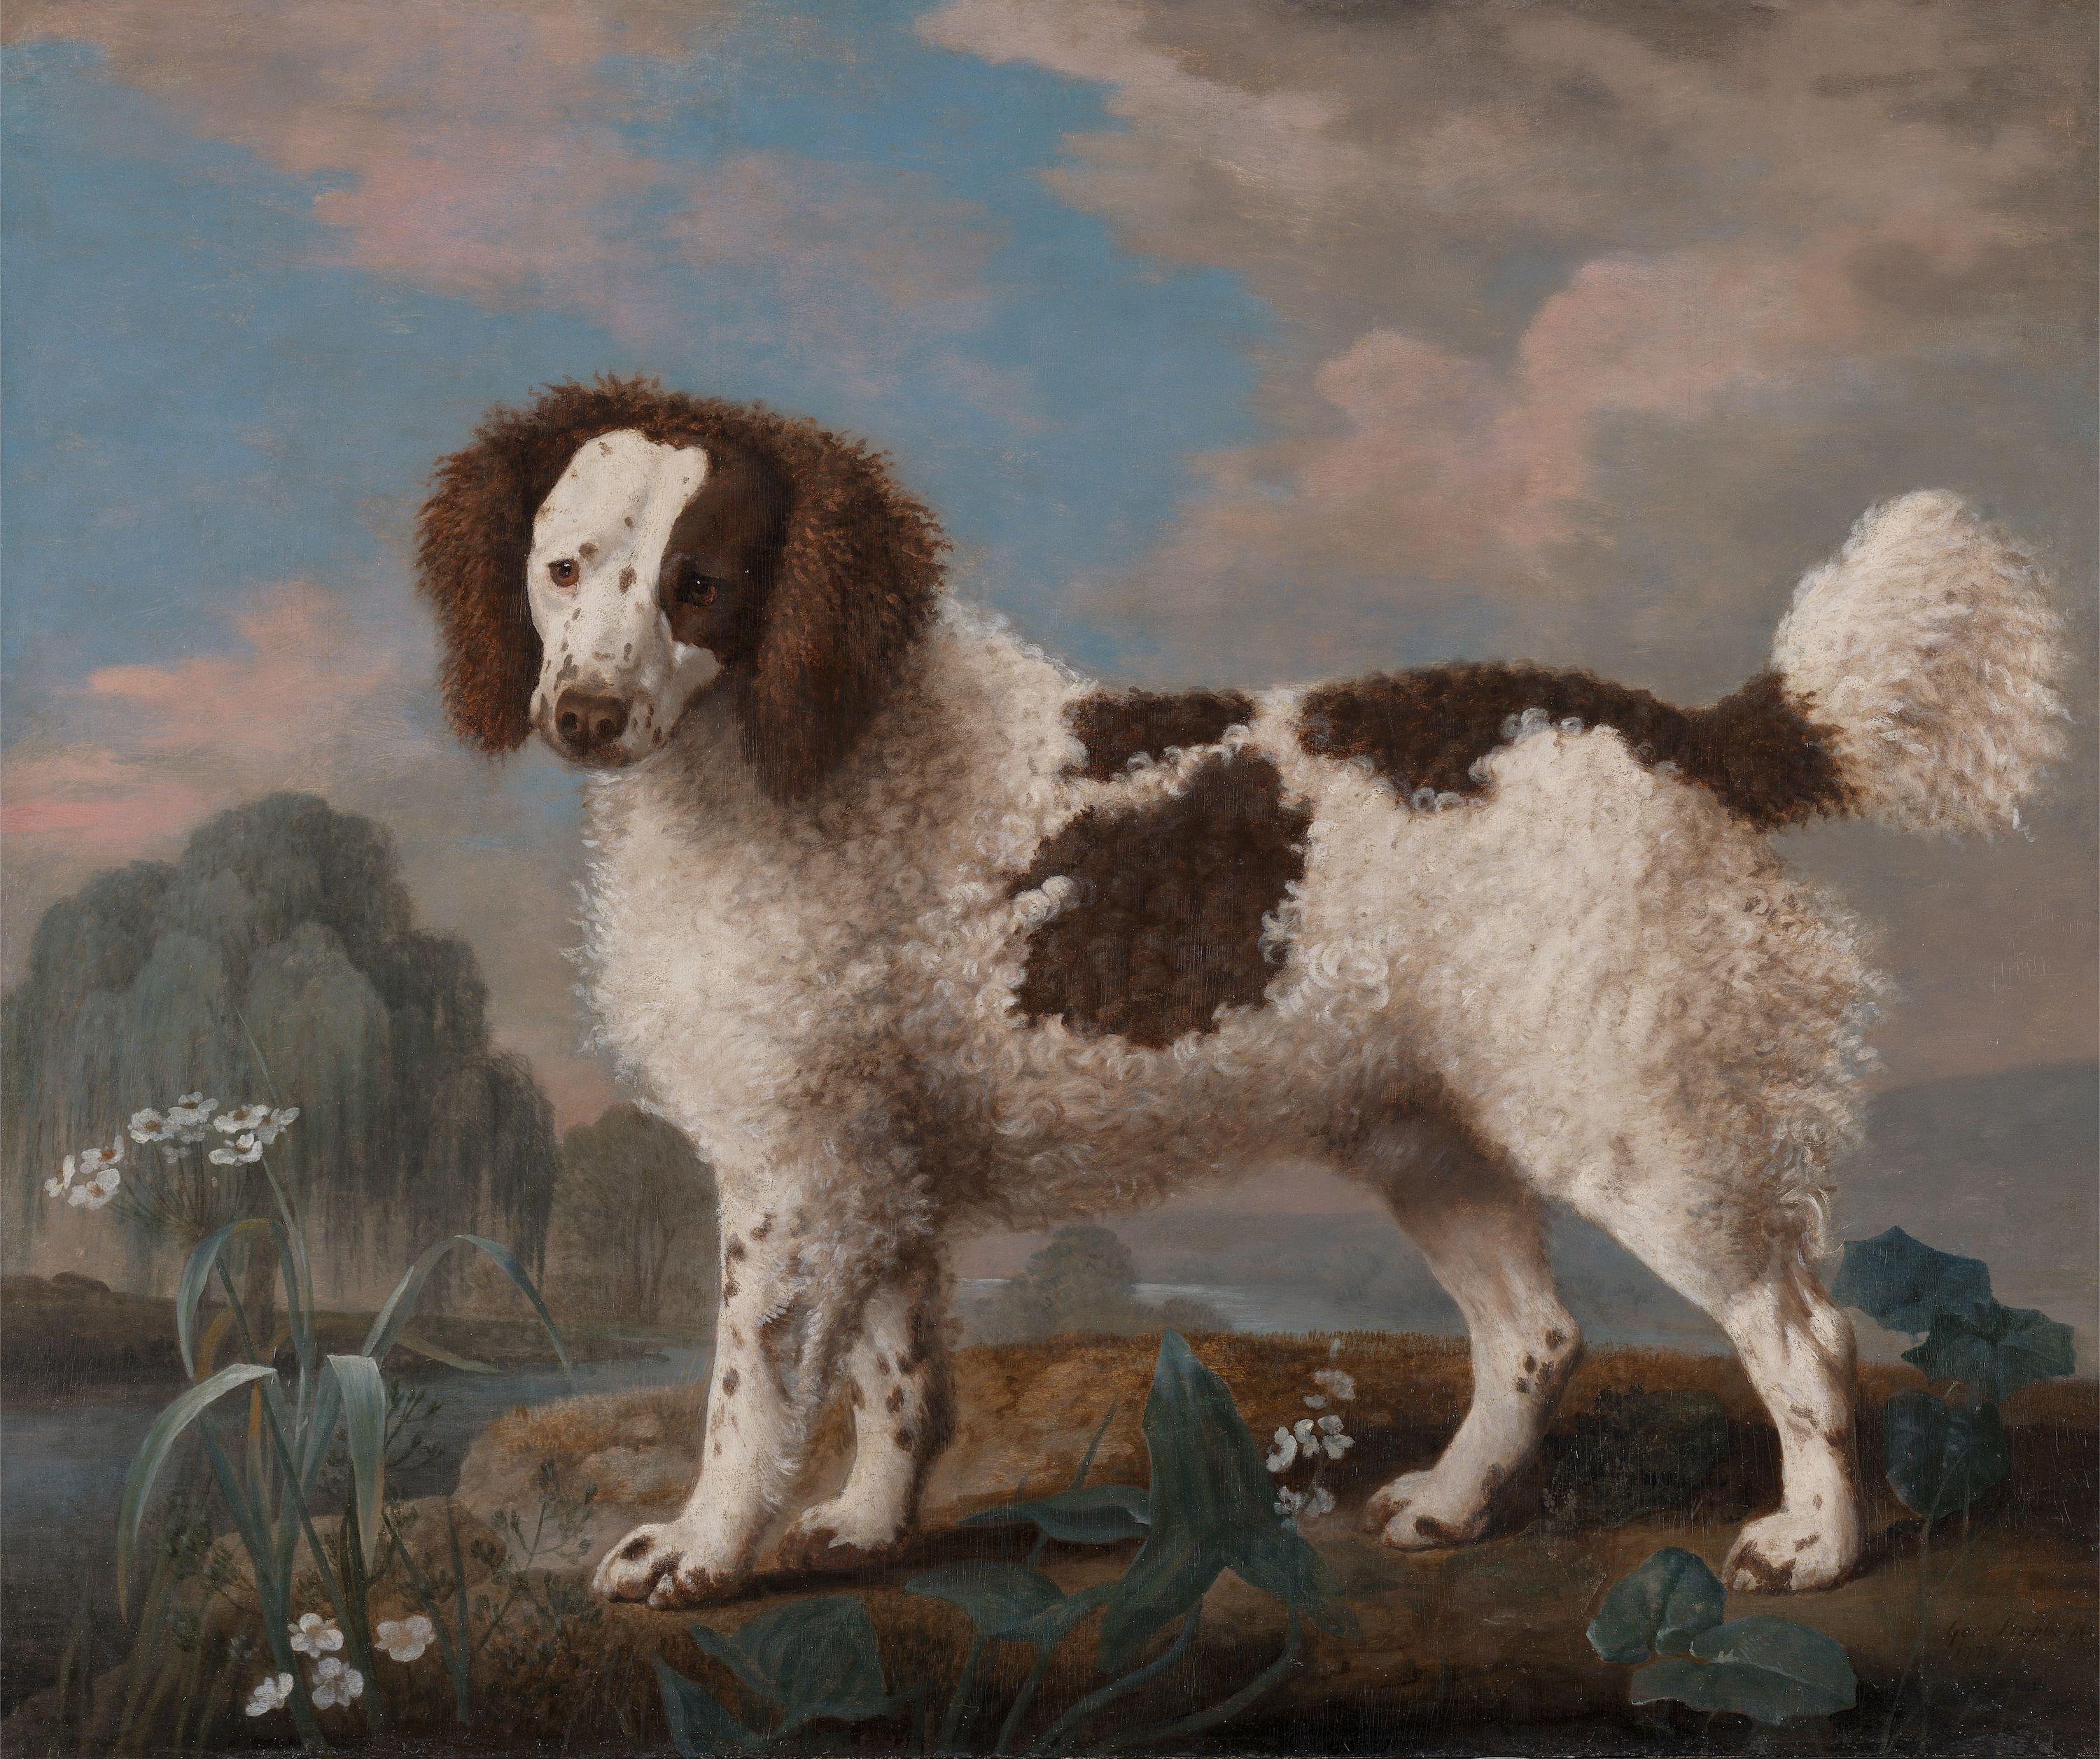 كلب بني وأبيض من فصيلة نورفولك أو الذليل المائي by George Stubbs - 1778 م - 80.6 في 97.2 سم 